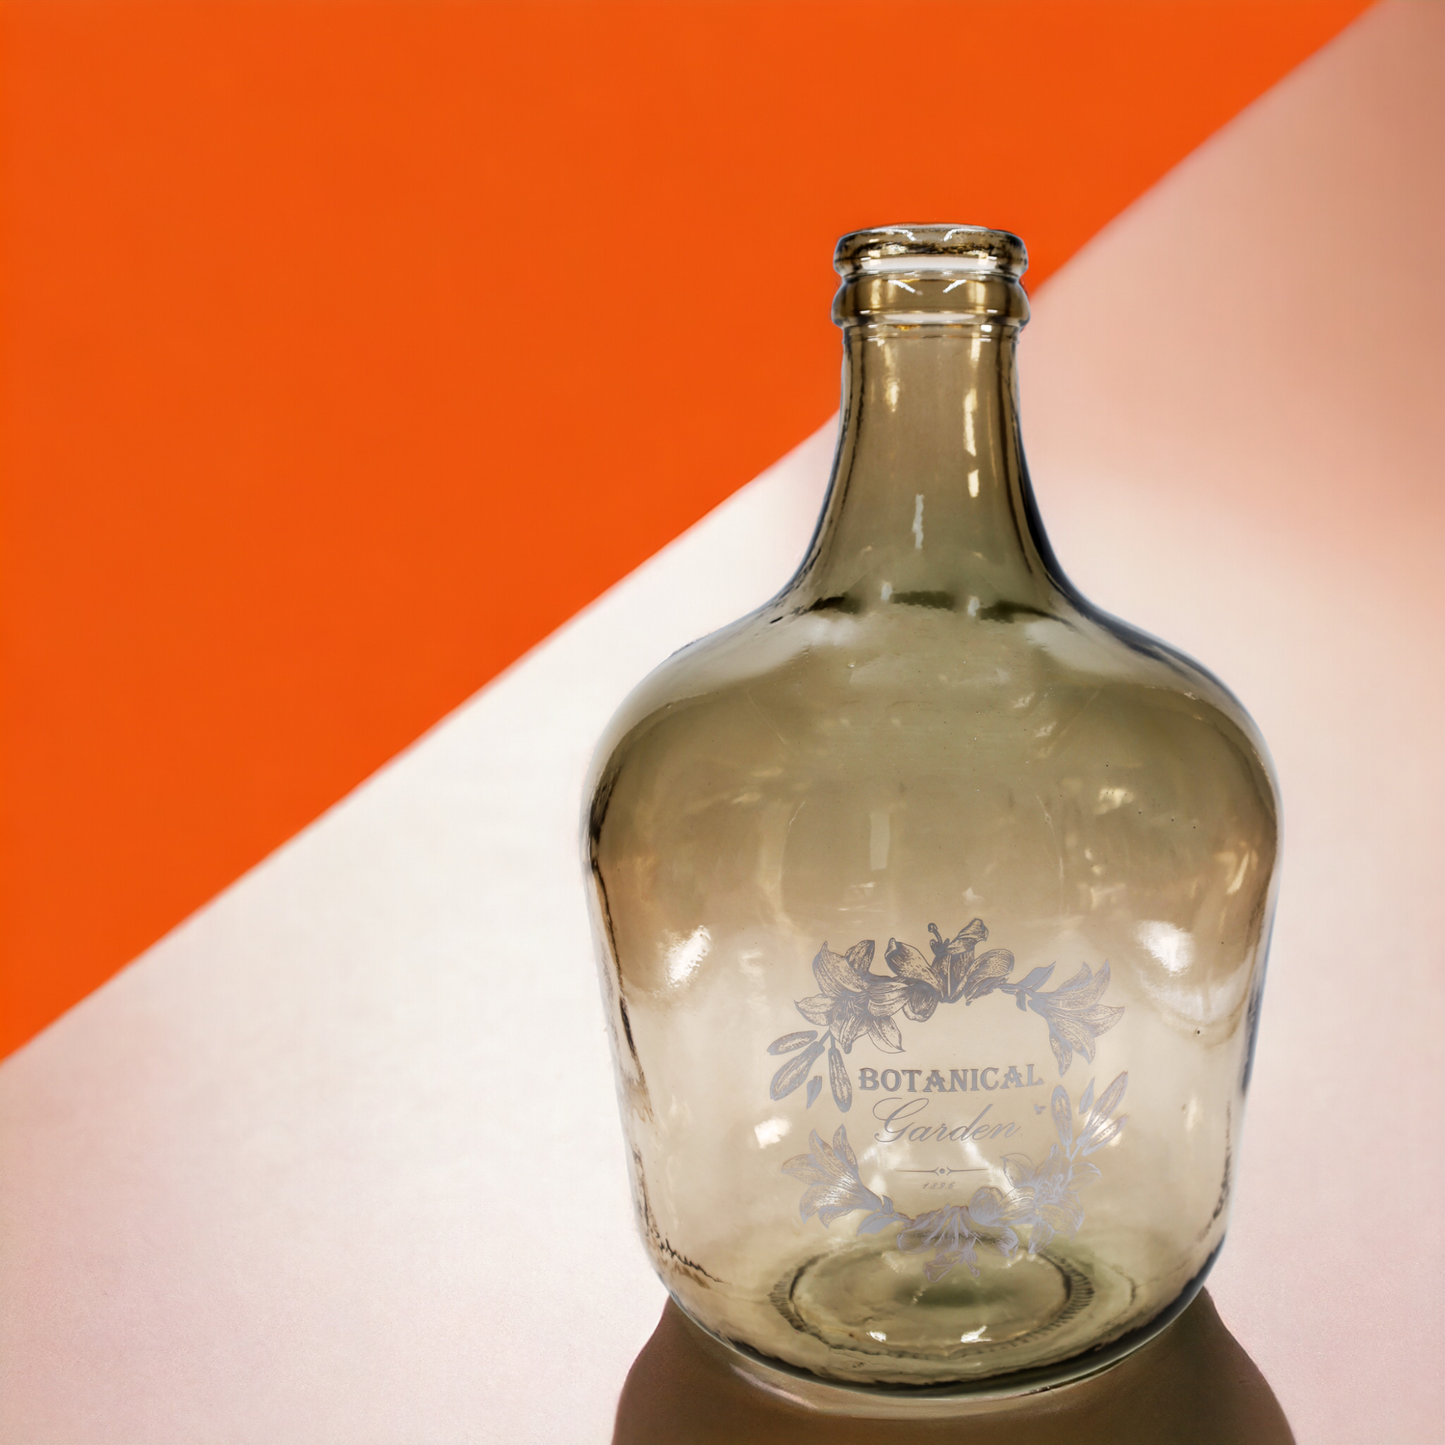 Vase - Flaschenkaraffe "Botanical" 12 l antik mit Aufdruck - 42 cm